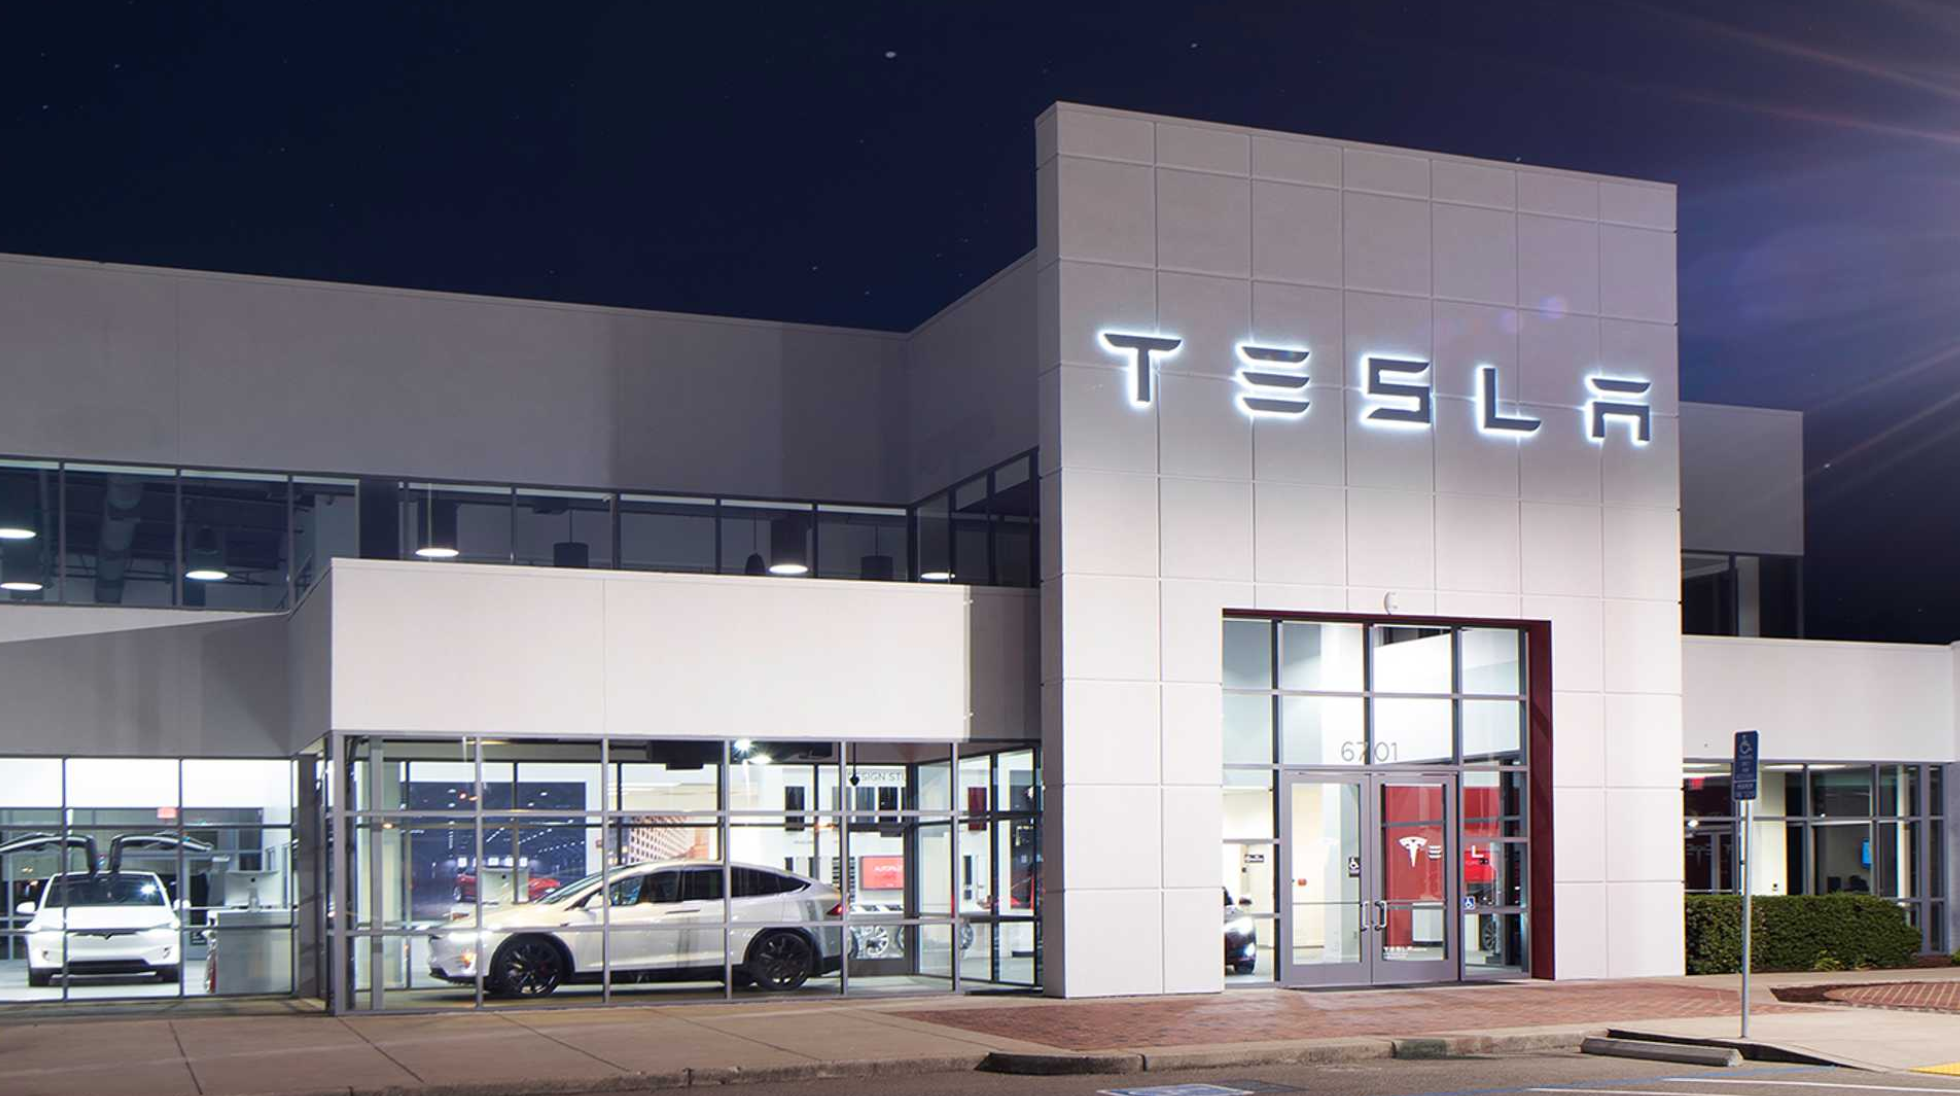 В отчетах говорится, что Tesla планирует открывать 1 новый сервисный центр в неделю в 2021 году